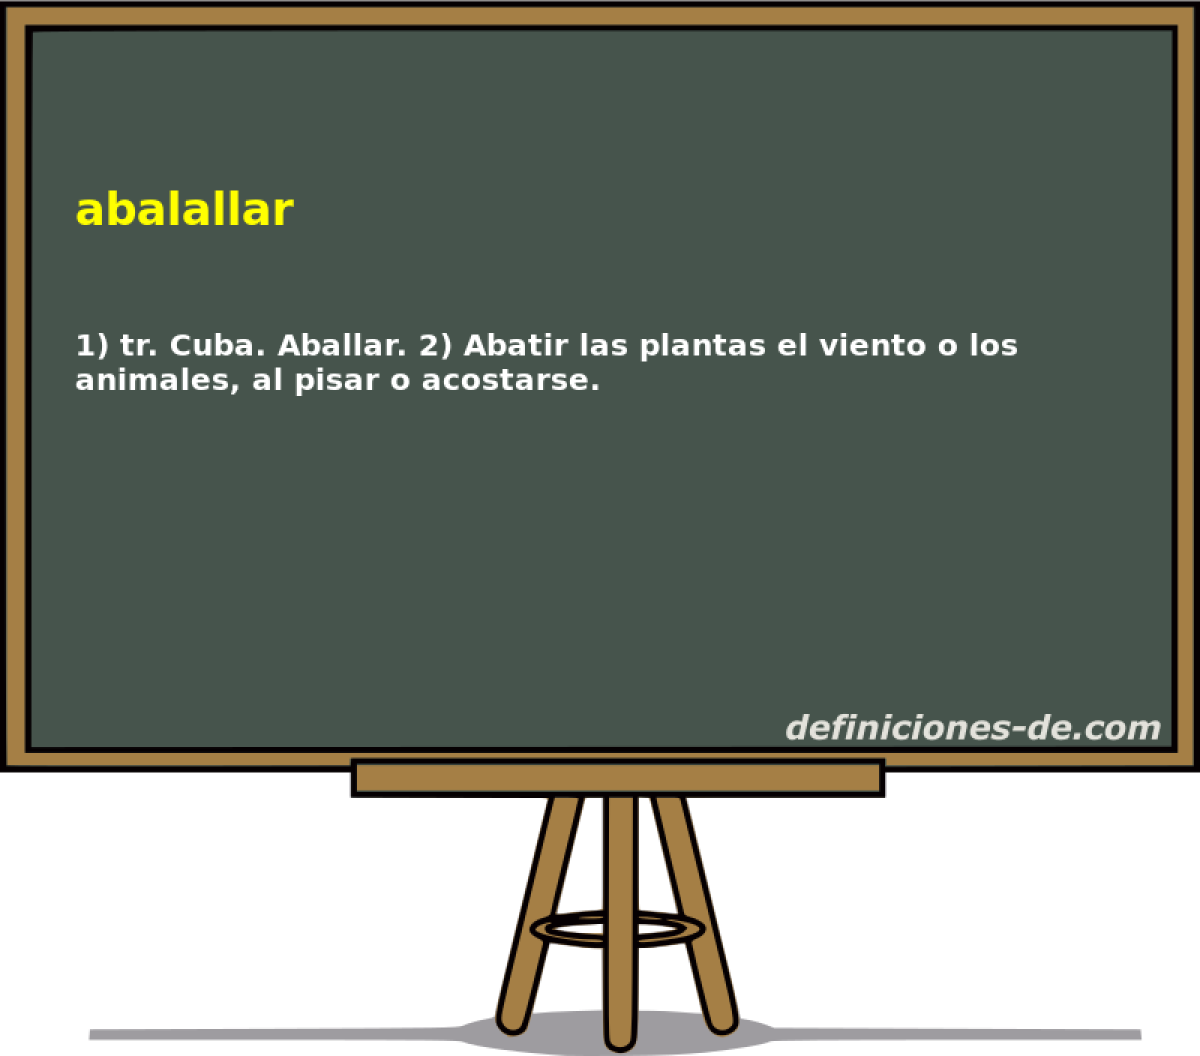 abalallar 